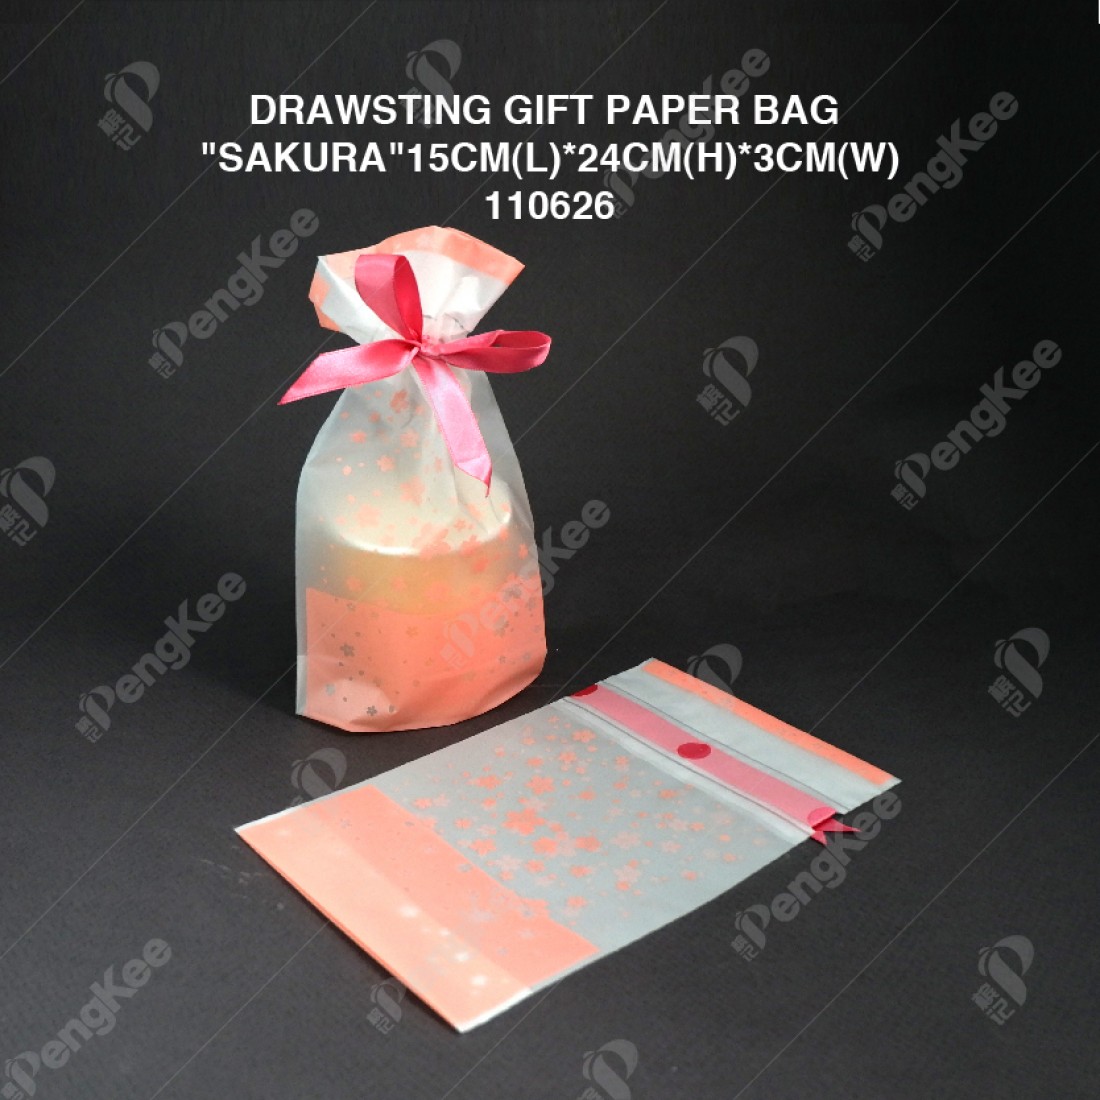 DRAWSTING GIFT PAPER BAG "SAKURA"15CM(L)*24CM(H)*3CM(W)(CM)50'S